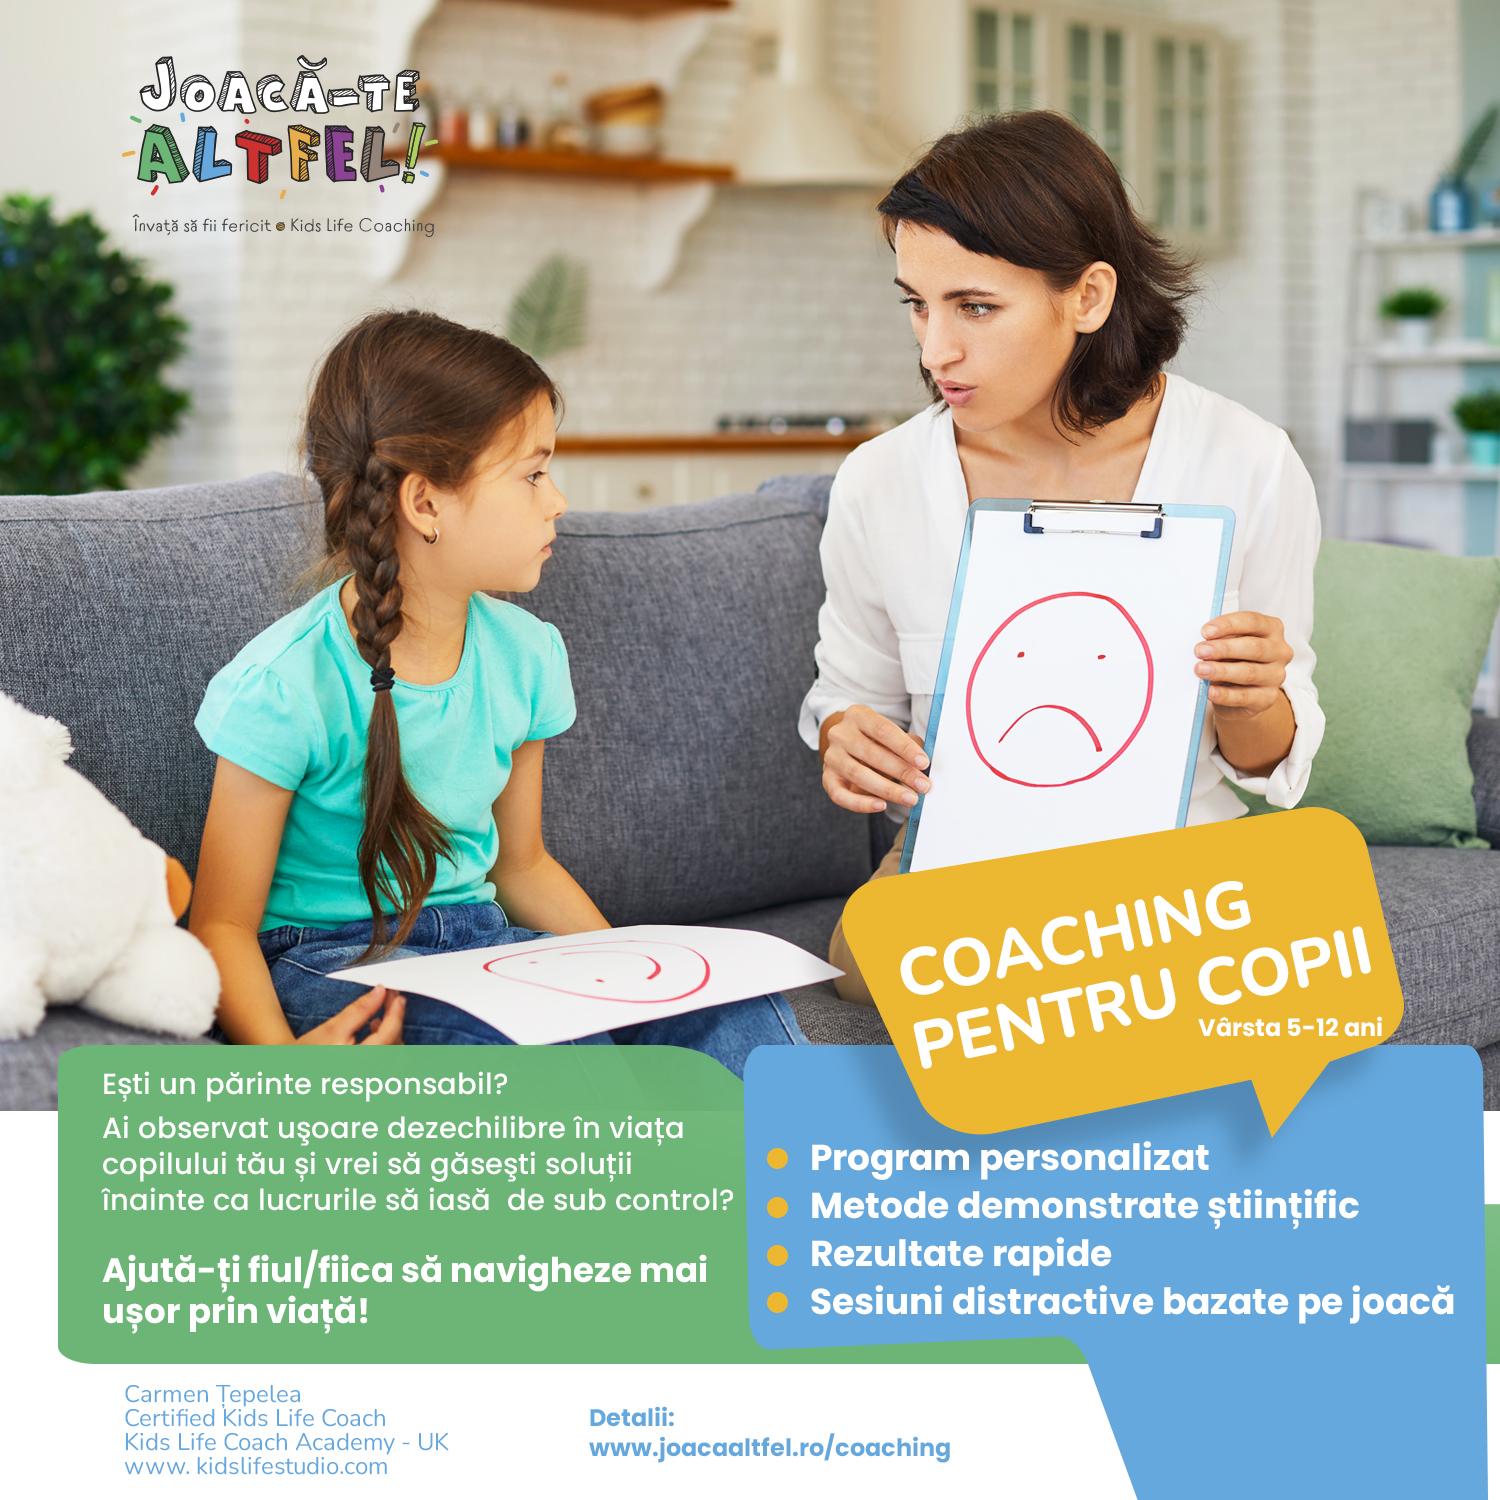 Coaching pentru copii – Joacă-te Altfel!